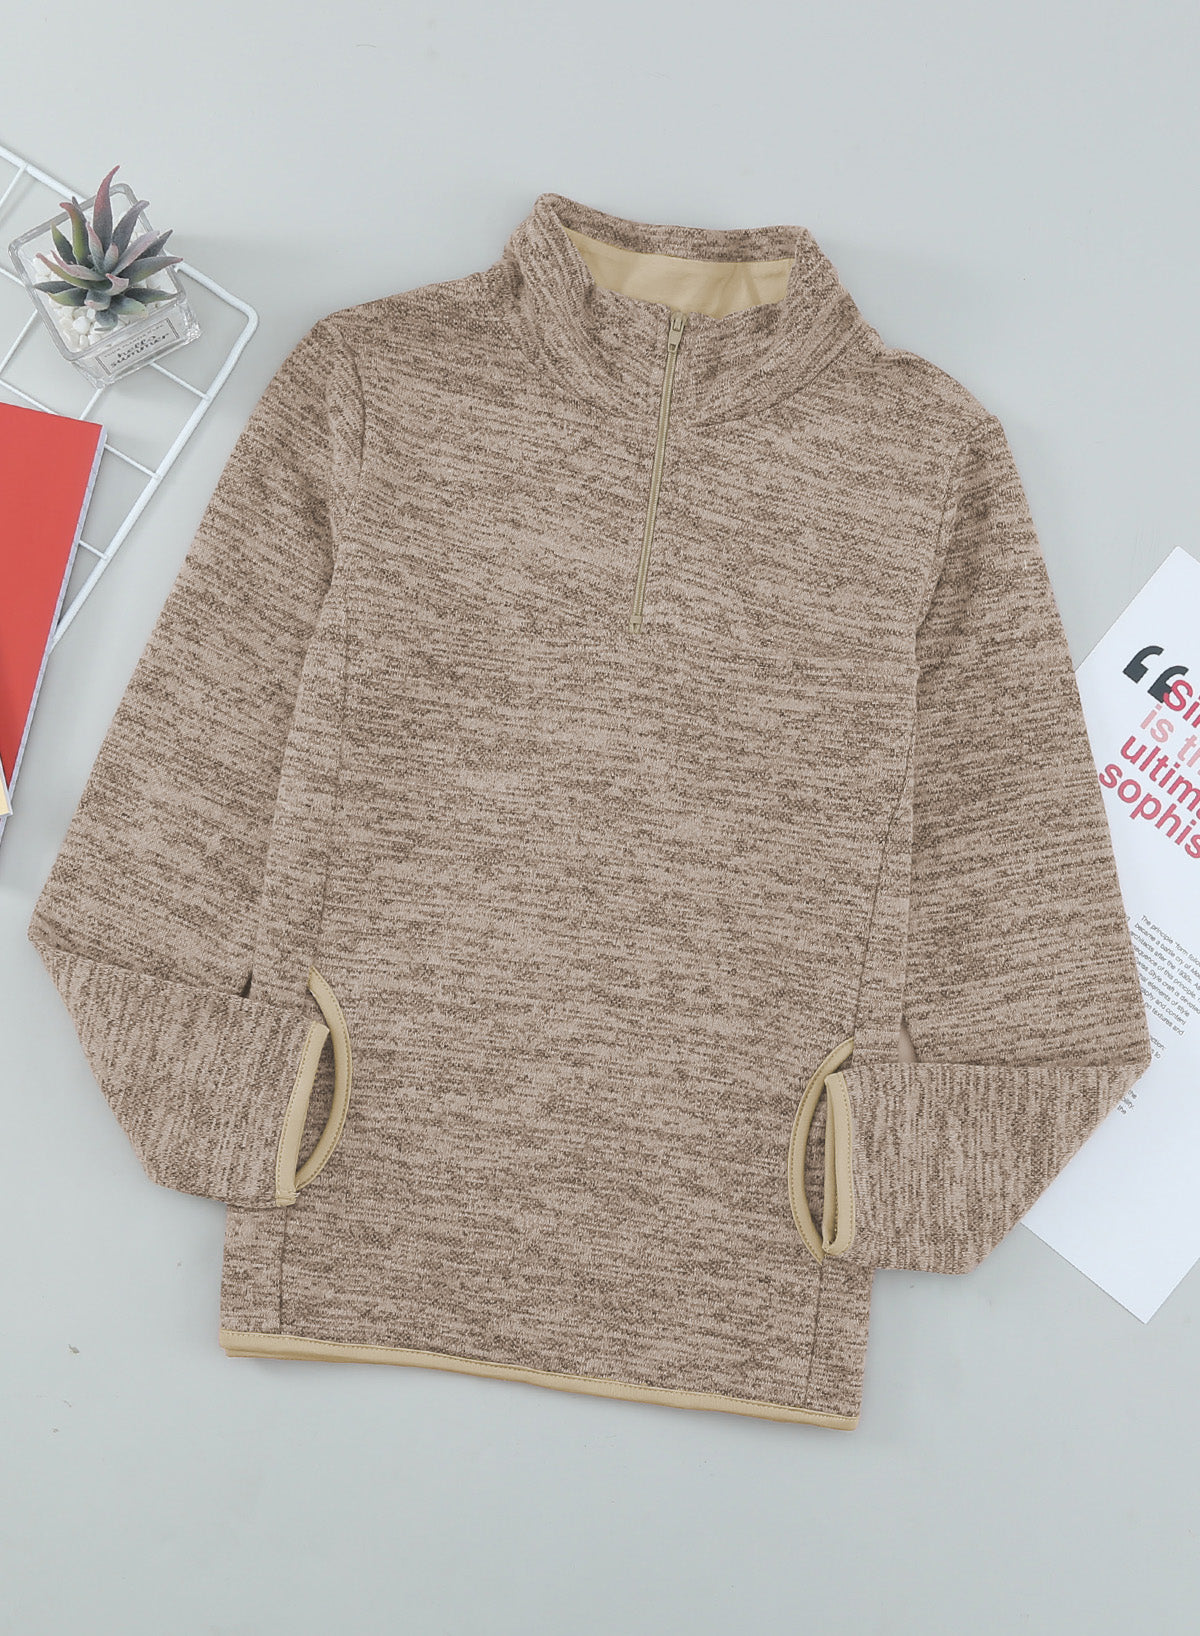 Kids Quarter-Zip Collar Sweatshirt with Kangaroo Pocket - DromedarShop.com Online Boutique